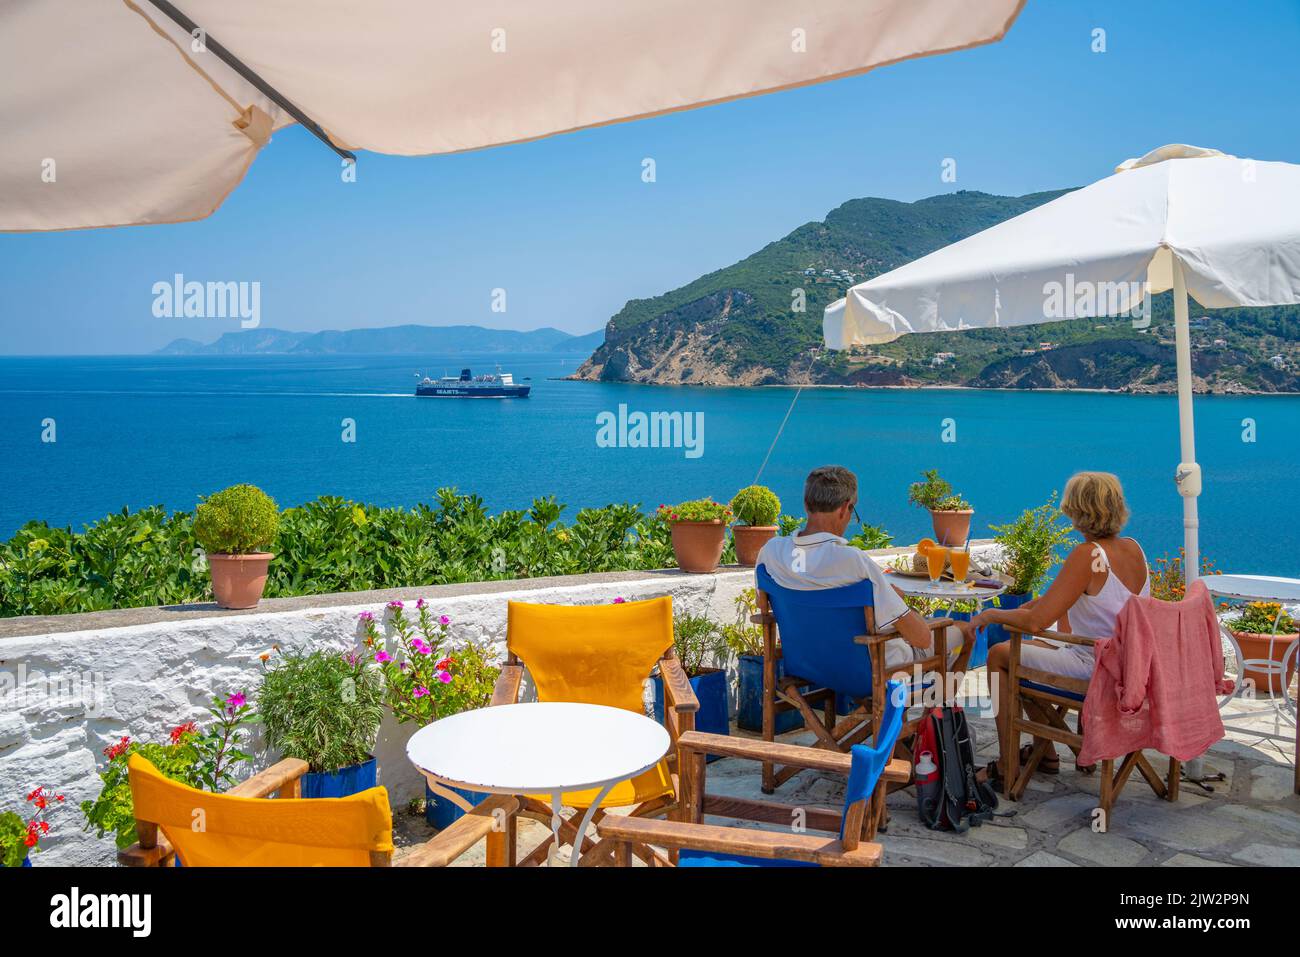 Vue sur le café surplombant la mer, la ville de Skopelos, l'île de Skopelos, les îles Sporades, les îles grecques, Grèce, Europe Banque D'Images